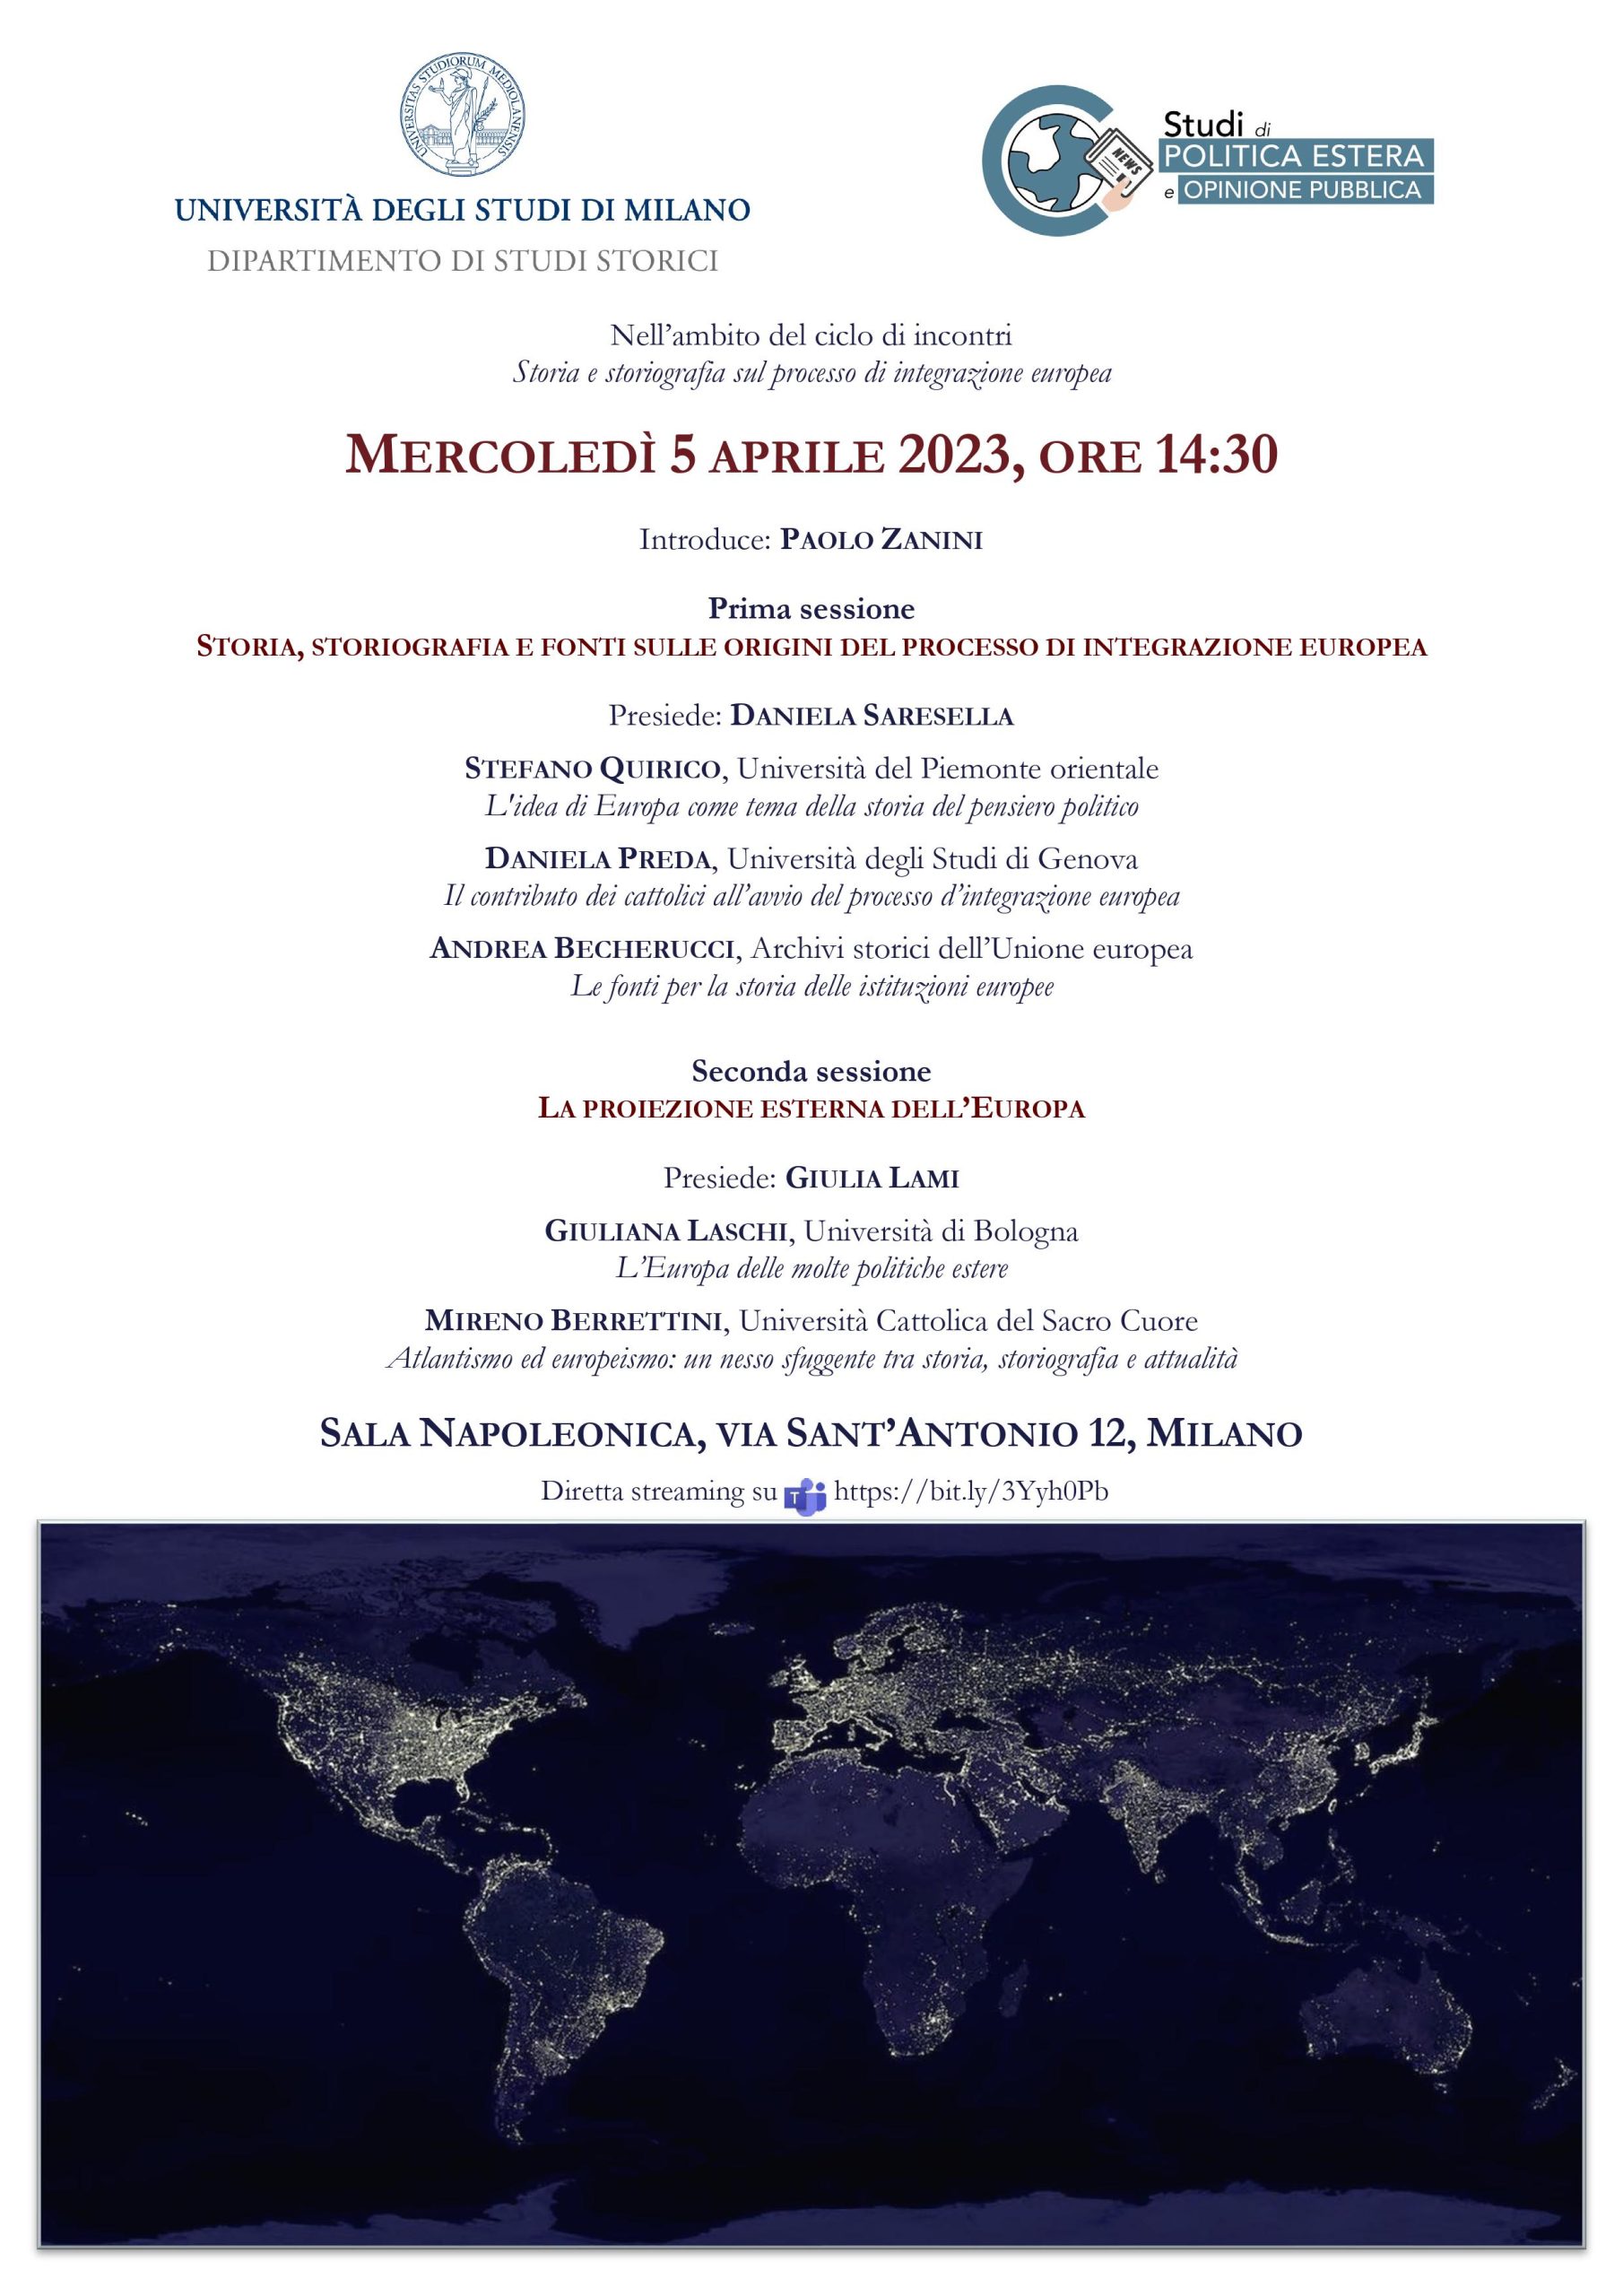 Storia, storiografia e fonti sulle origini del processo di integrazione europea, mercoledì 5 aprile 2023